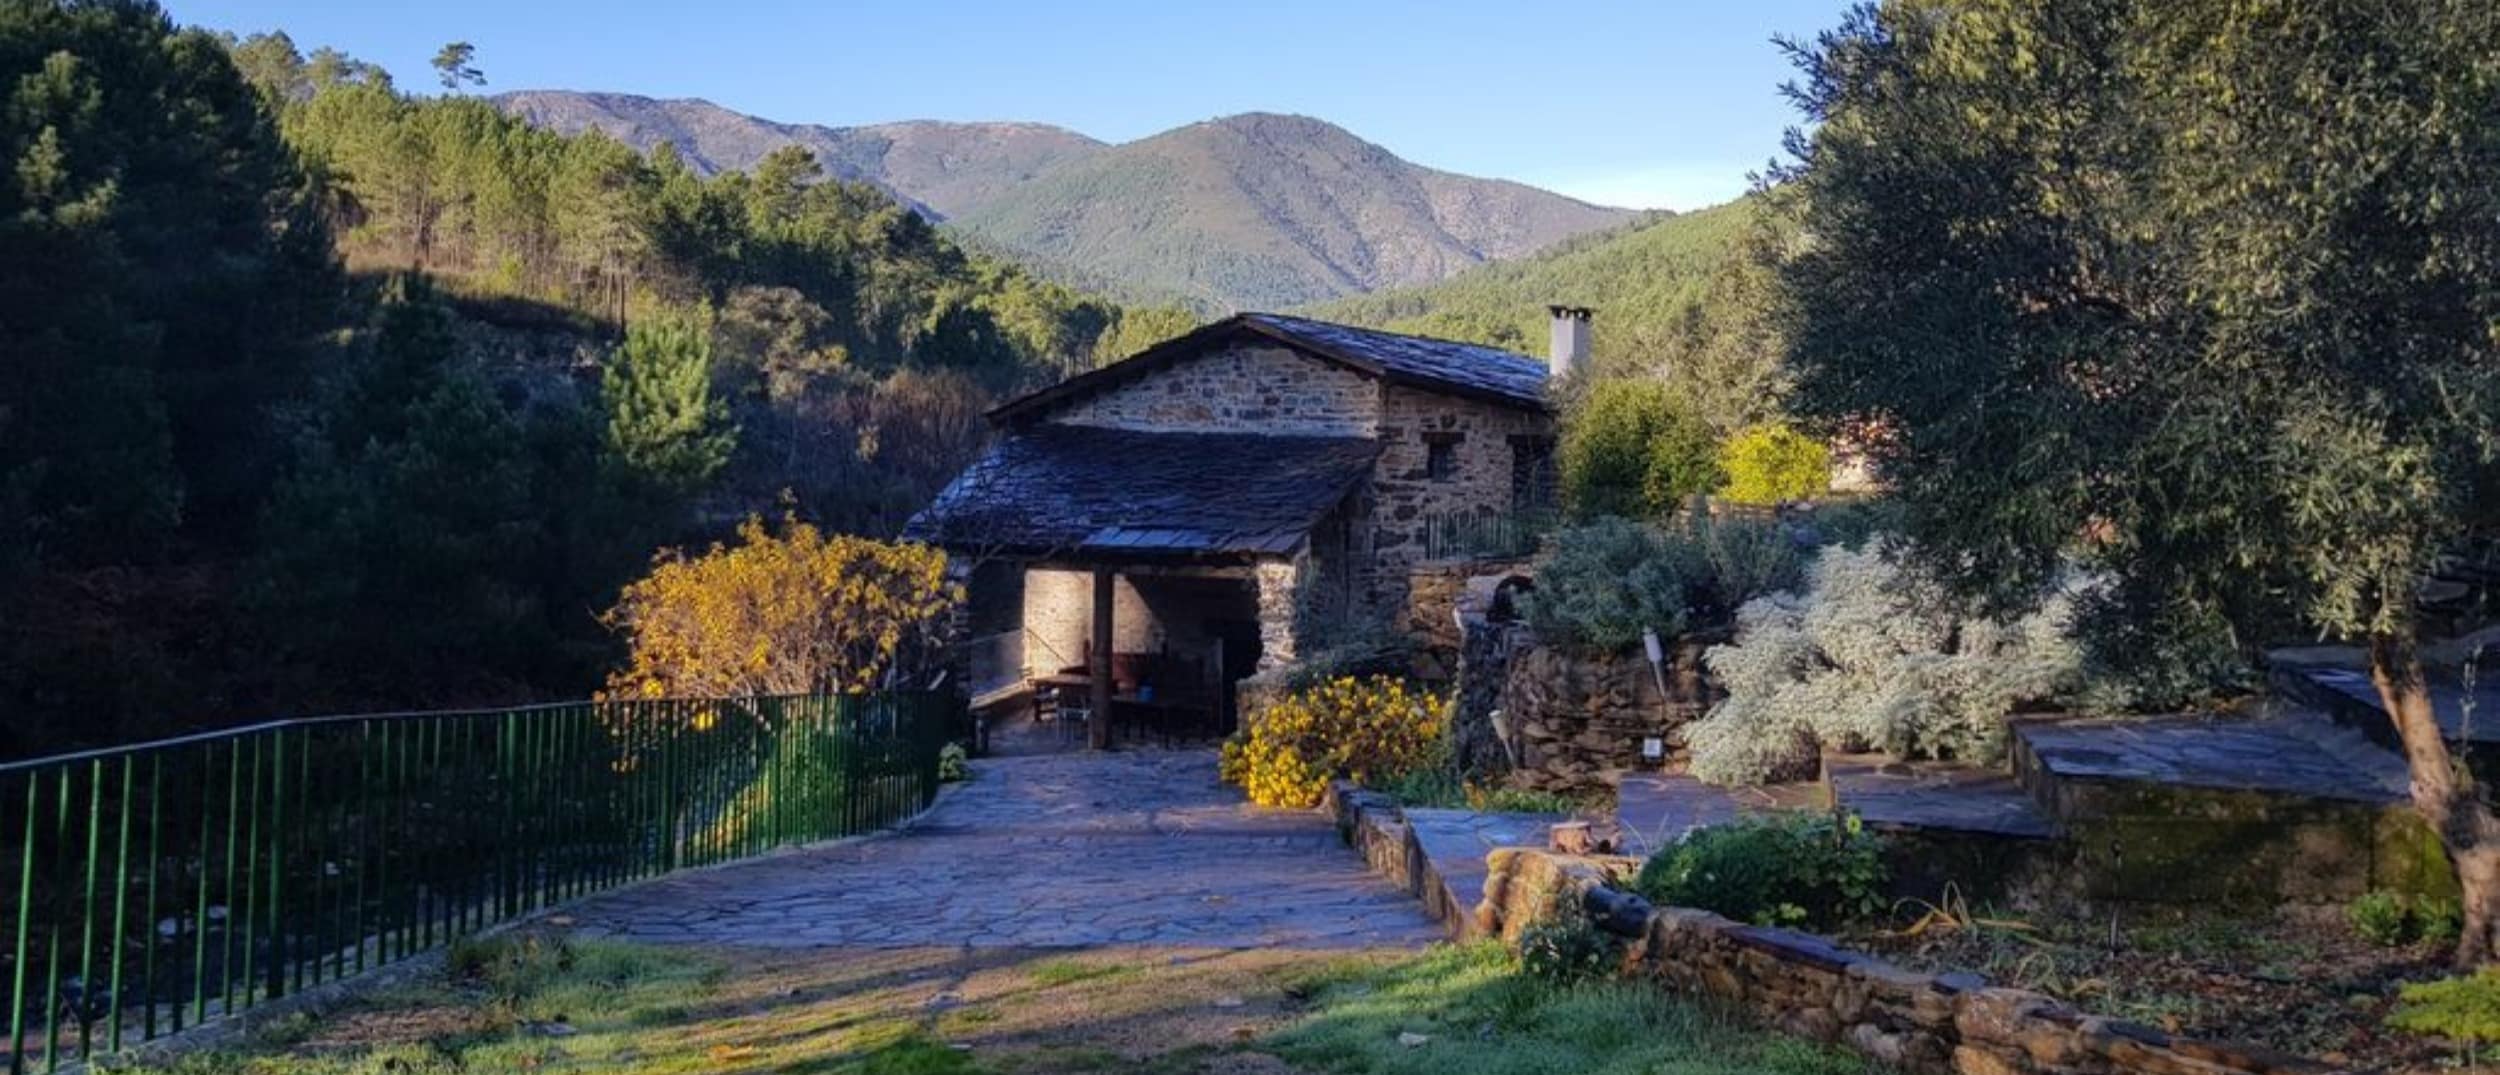 Desconecta en una casa rural en Extremadura